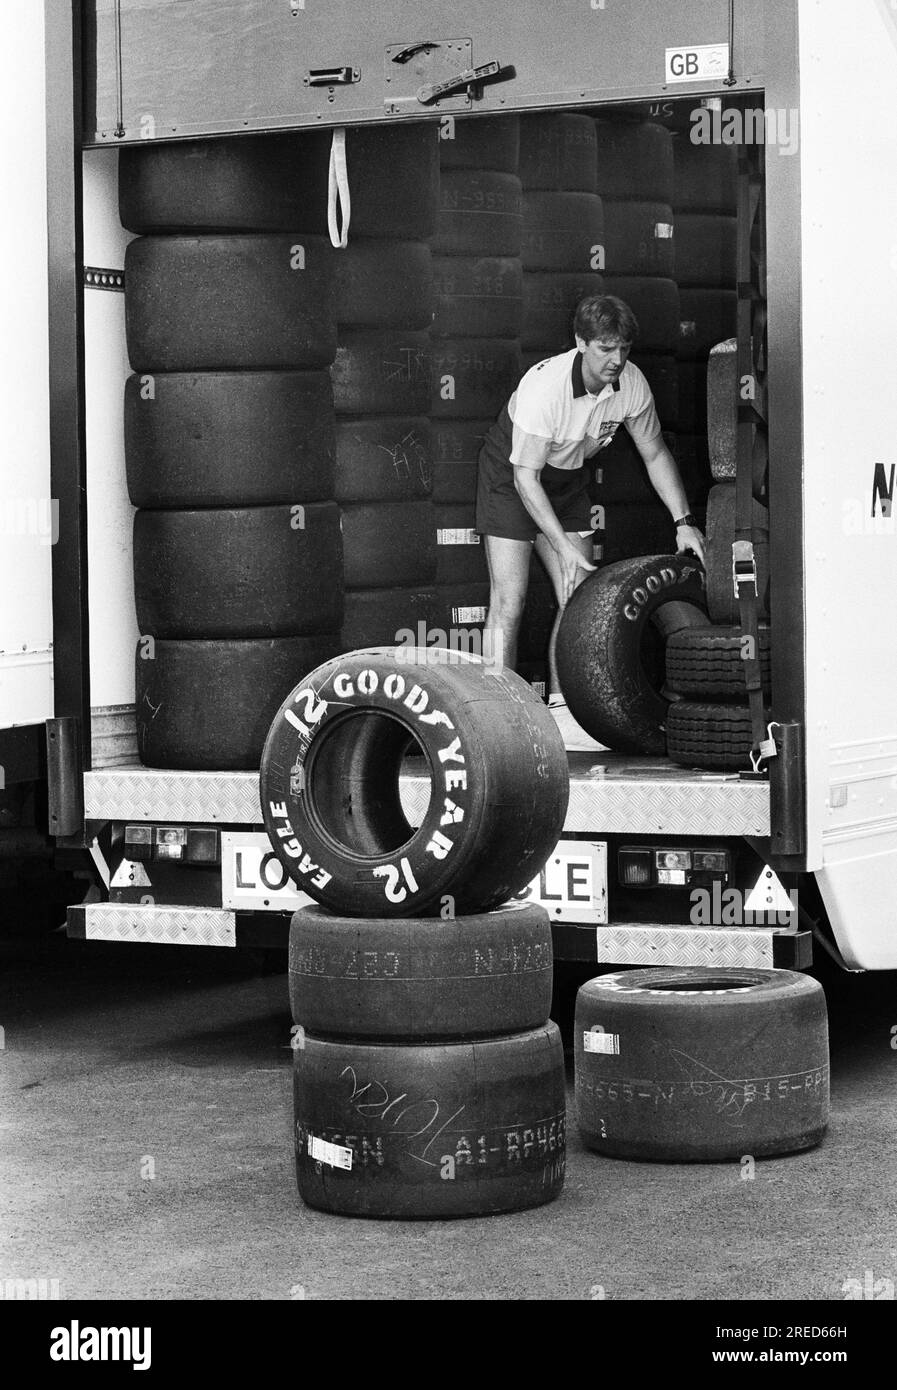 Deutschland, Hockenheim, 15.07.1992 Archiv: 35-39-18 Formel-1-Probefahrten beim Hockenheimring Foto: Truck with Tires from Good Year [maschinelle Übersetzung] Stockfoto